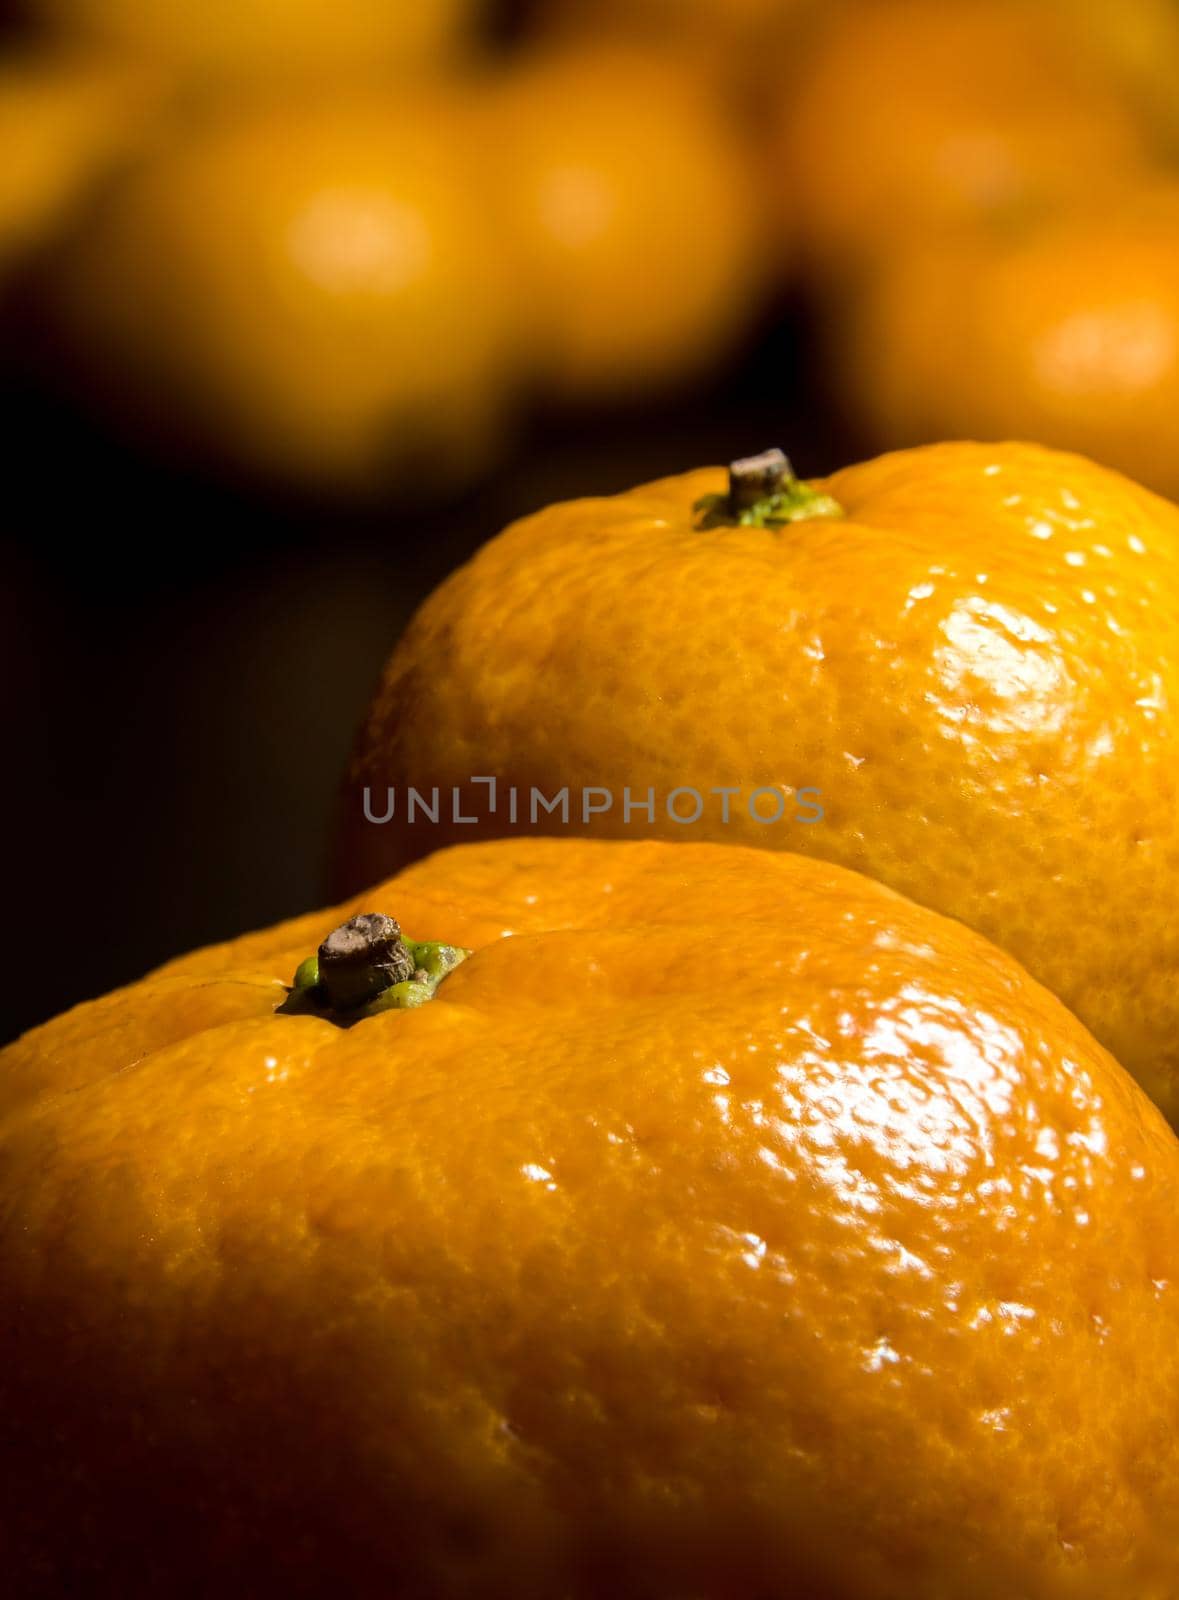 Close-up on glossy surface of freshness orange fruits